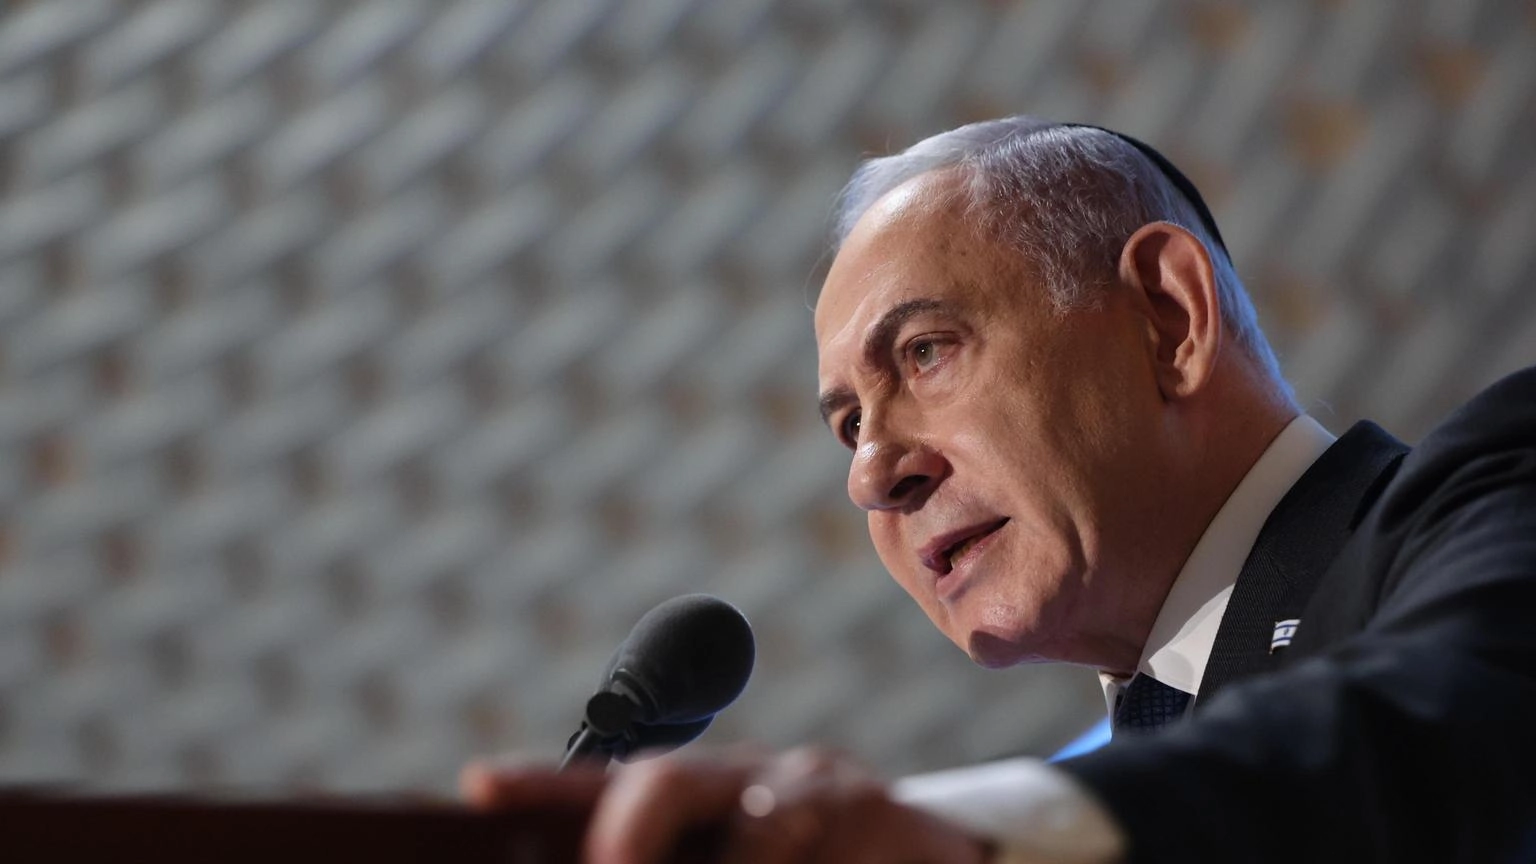 Netanyahu, Israele esigerà prezzo pesante per aggressioni